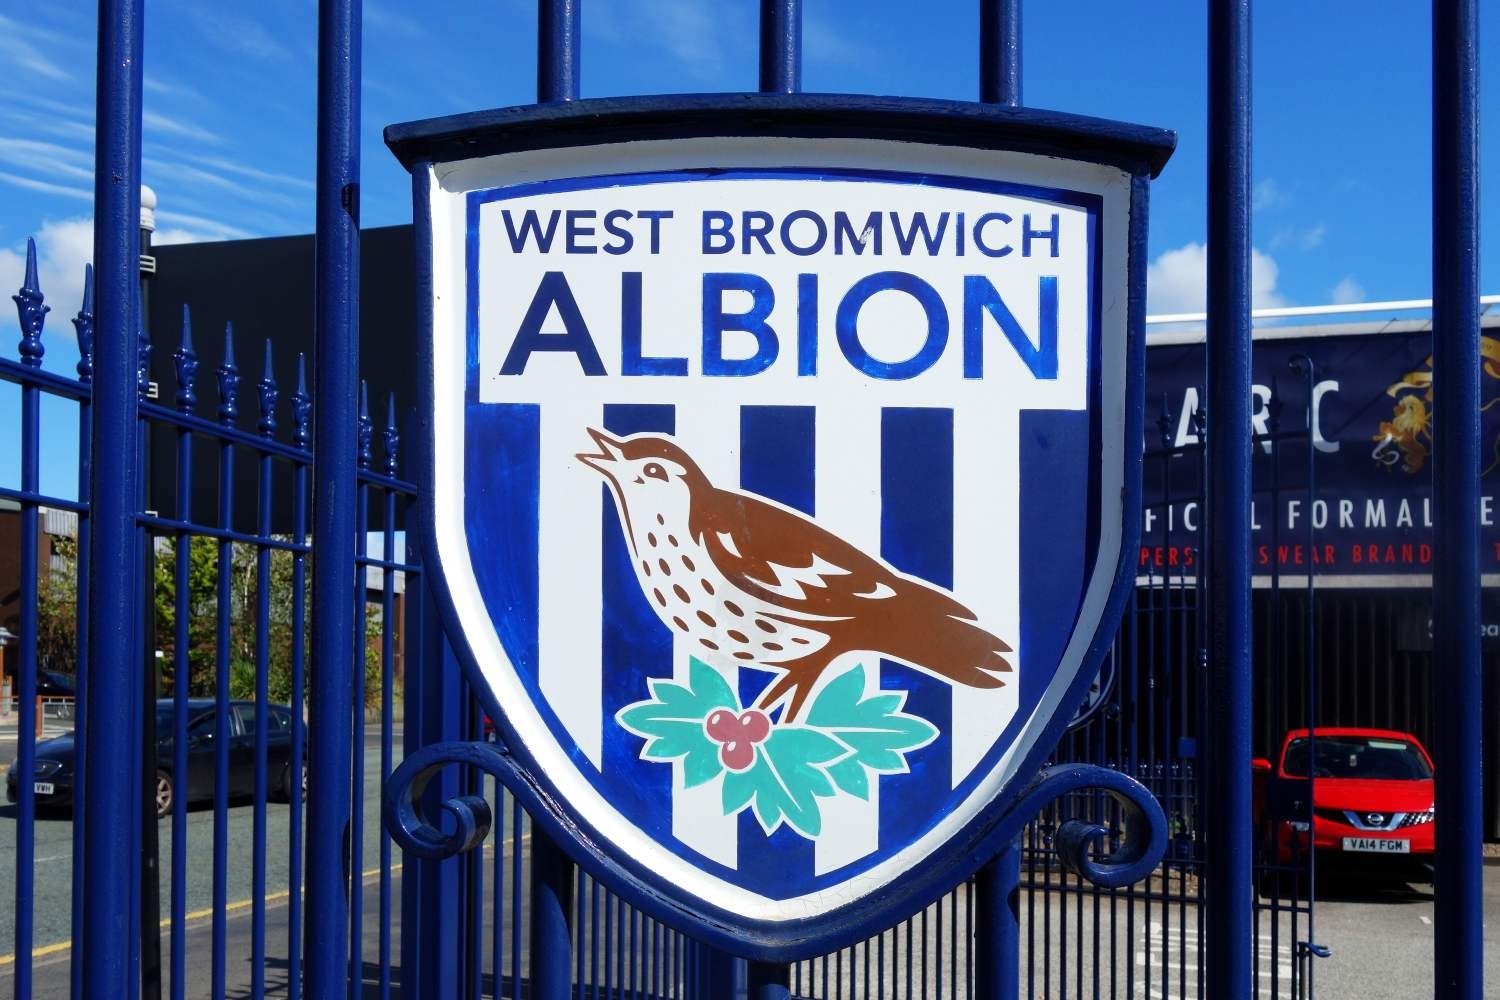 OFICJALNIE: West Bromwich Albion sprowadziło bramkostrzelnego napastnika z MLS